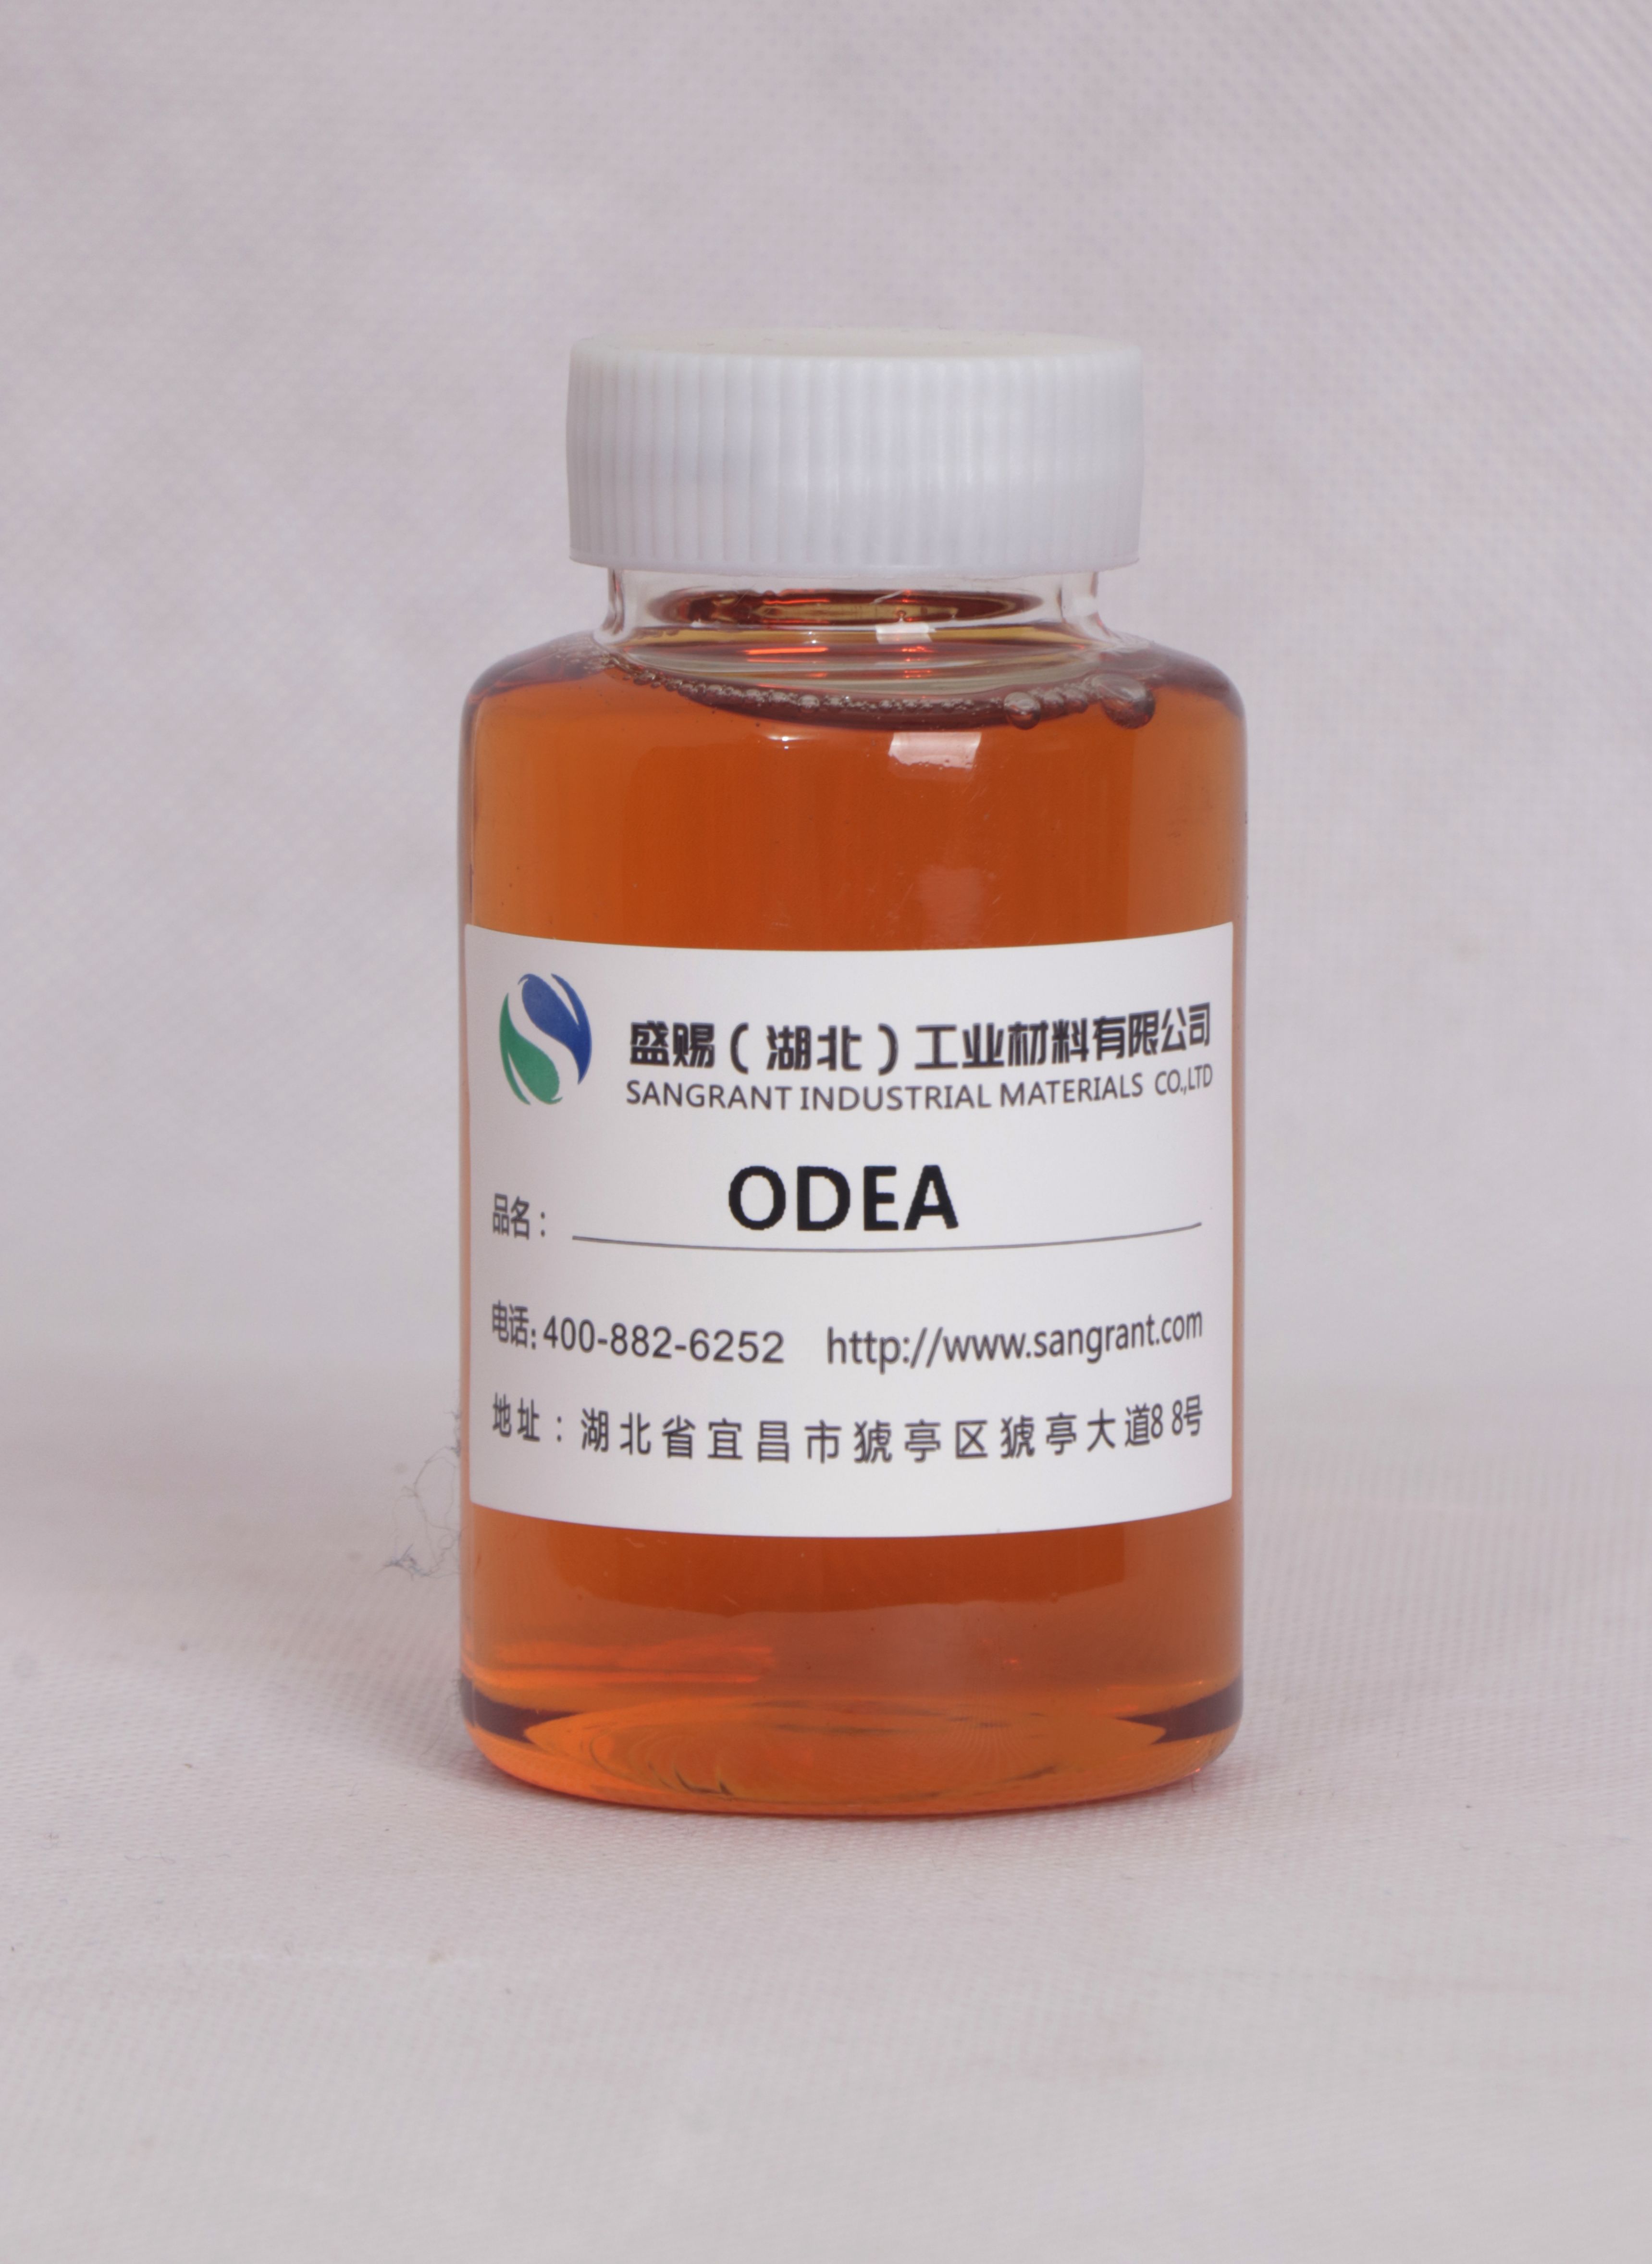 盛赐 油酸二乙醇酰胺 ODEA日化增稠、纺织助剂乳化剂 重油污清洗剂 质量稳定